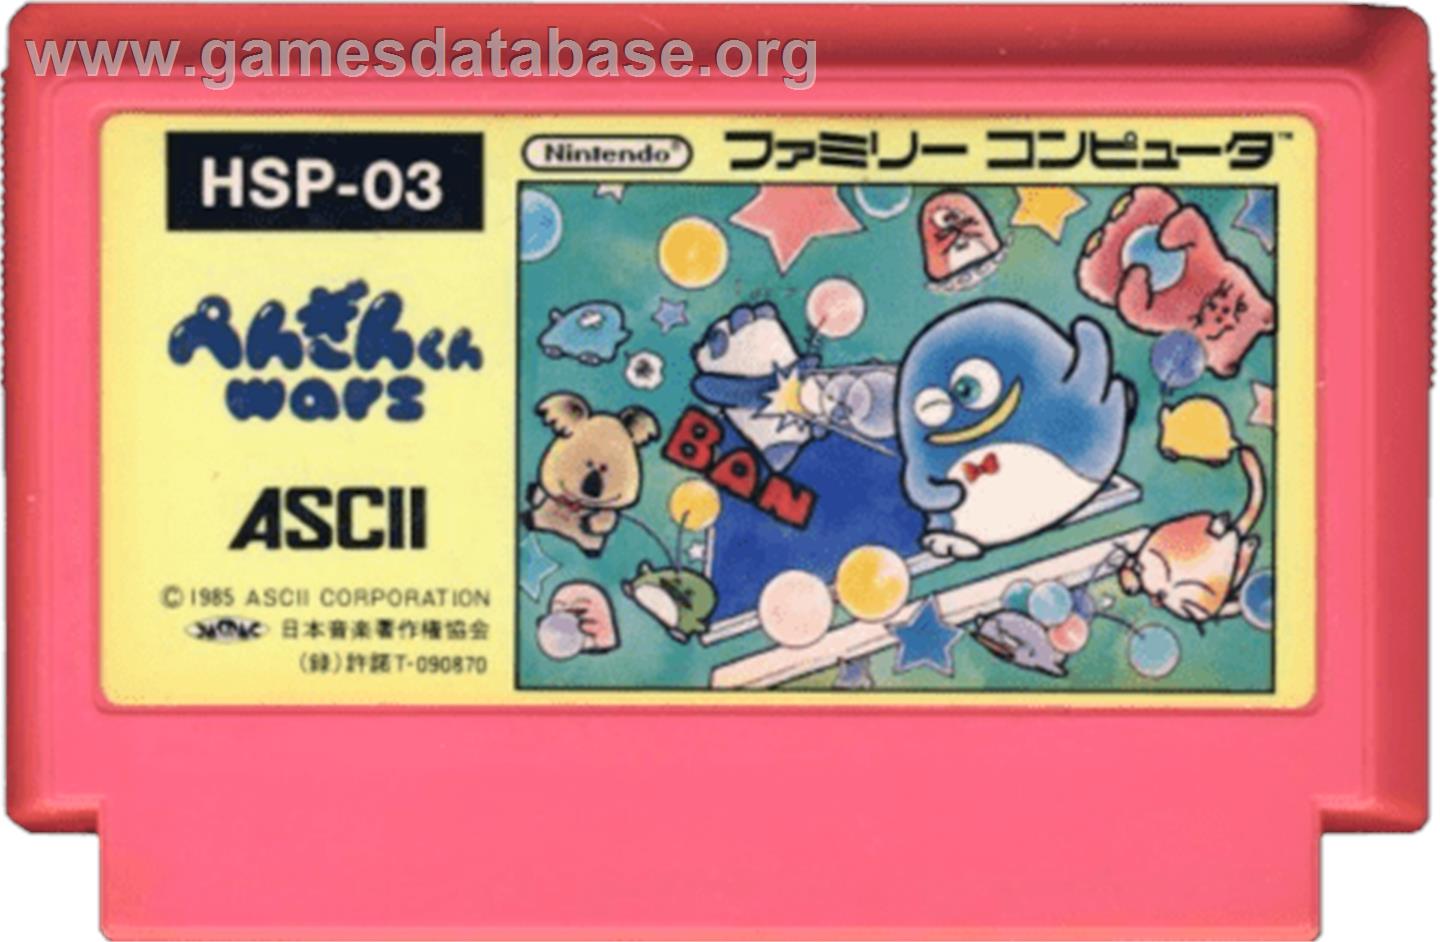 Penguin-Kun Wars - Nintendo NES - Artwork - Cartridge